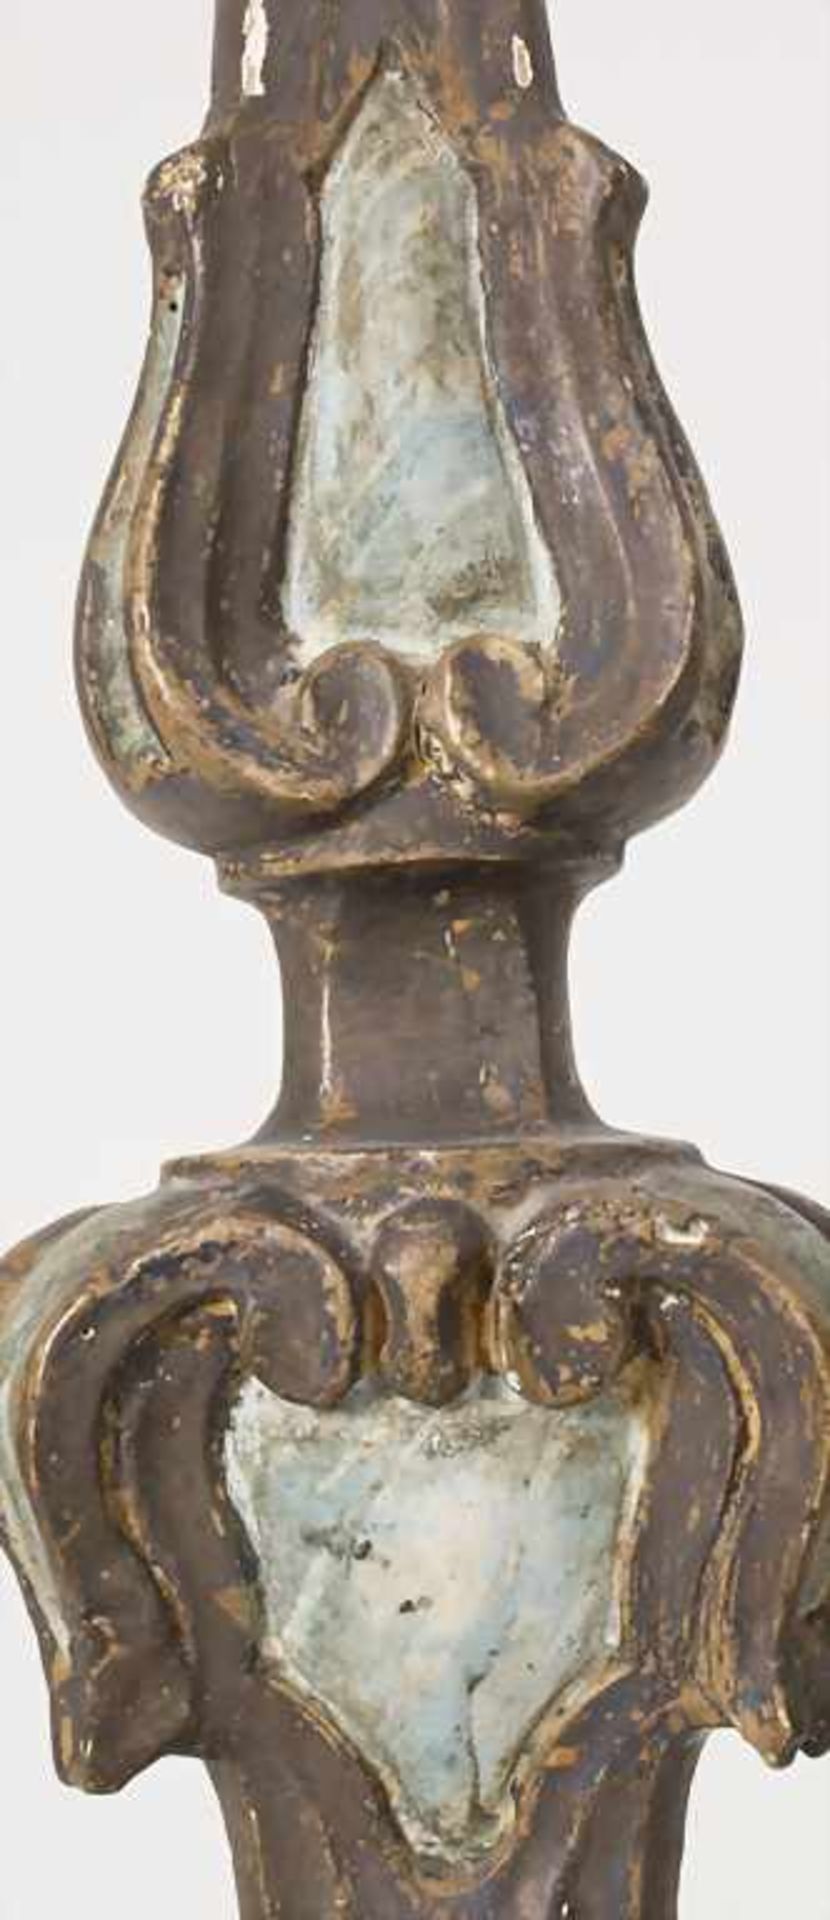 Altarleuchter / An altar candlestick, süddeutsch 18. Jh.Material: Holz, geschnitzt, farbig - Bild 10 aus 13